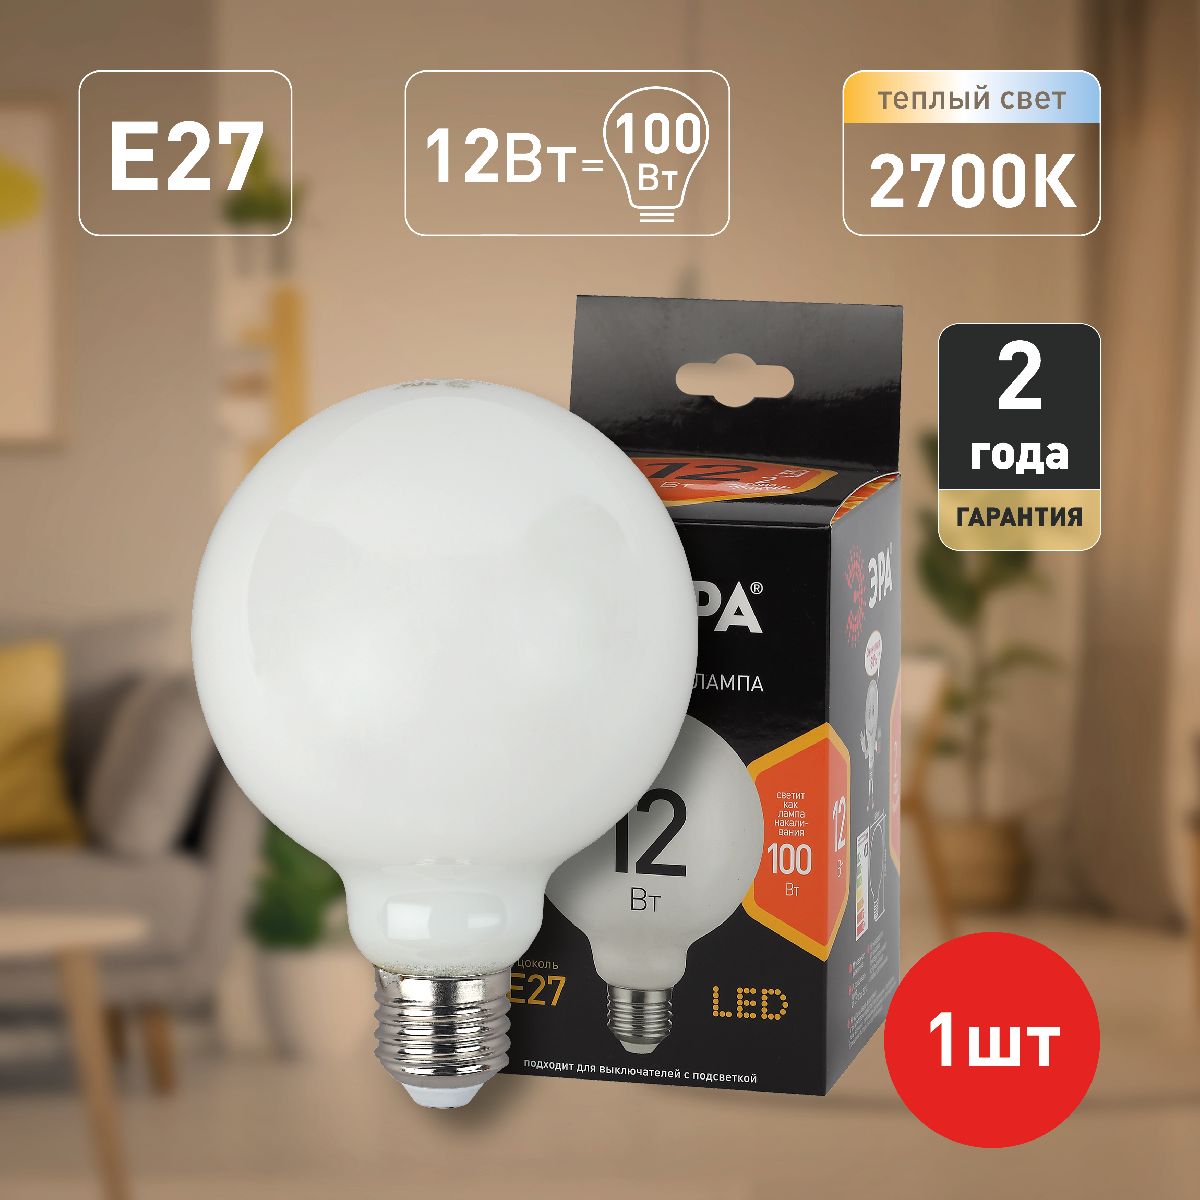 Лампа светодиодная Эра E27 12W 2700K F-LED G95-12w-827-E27 OPAL Б0047036